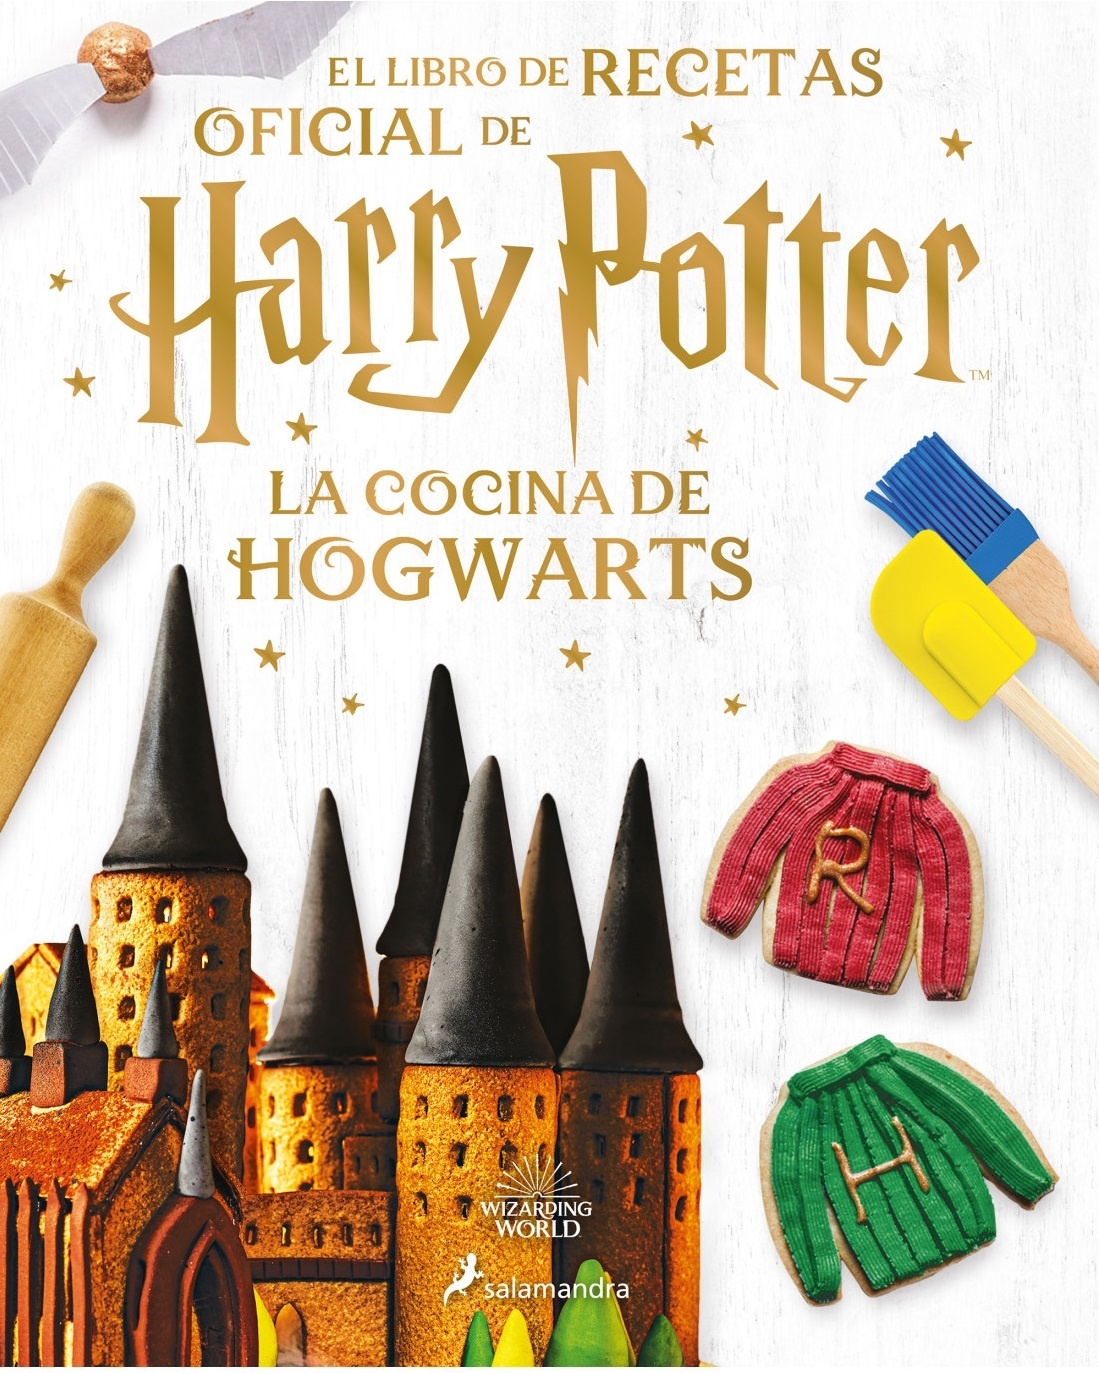 Cocina de Hogwarts, La "El libro de recetas oficial de Harry Potter". 